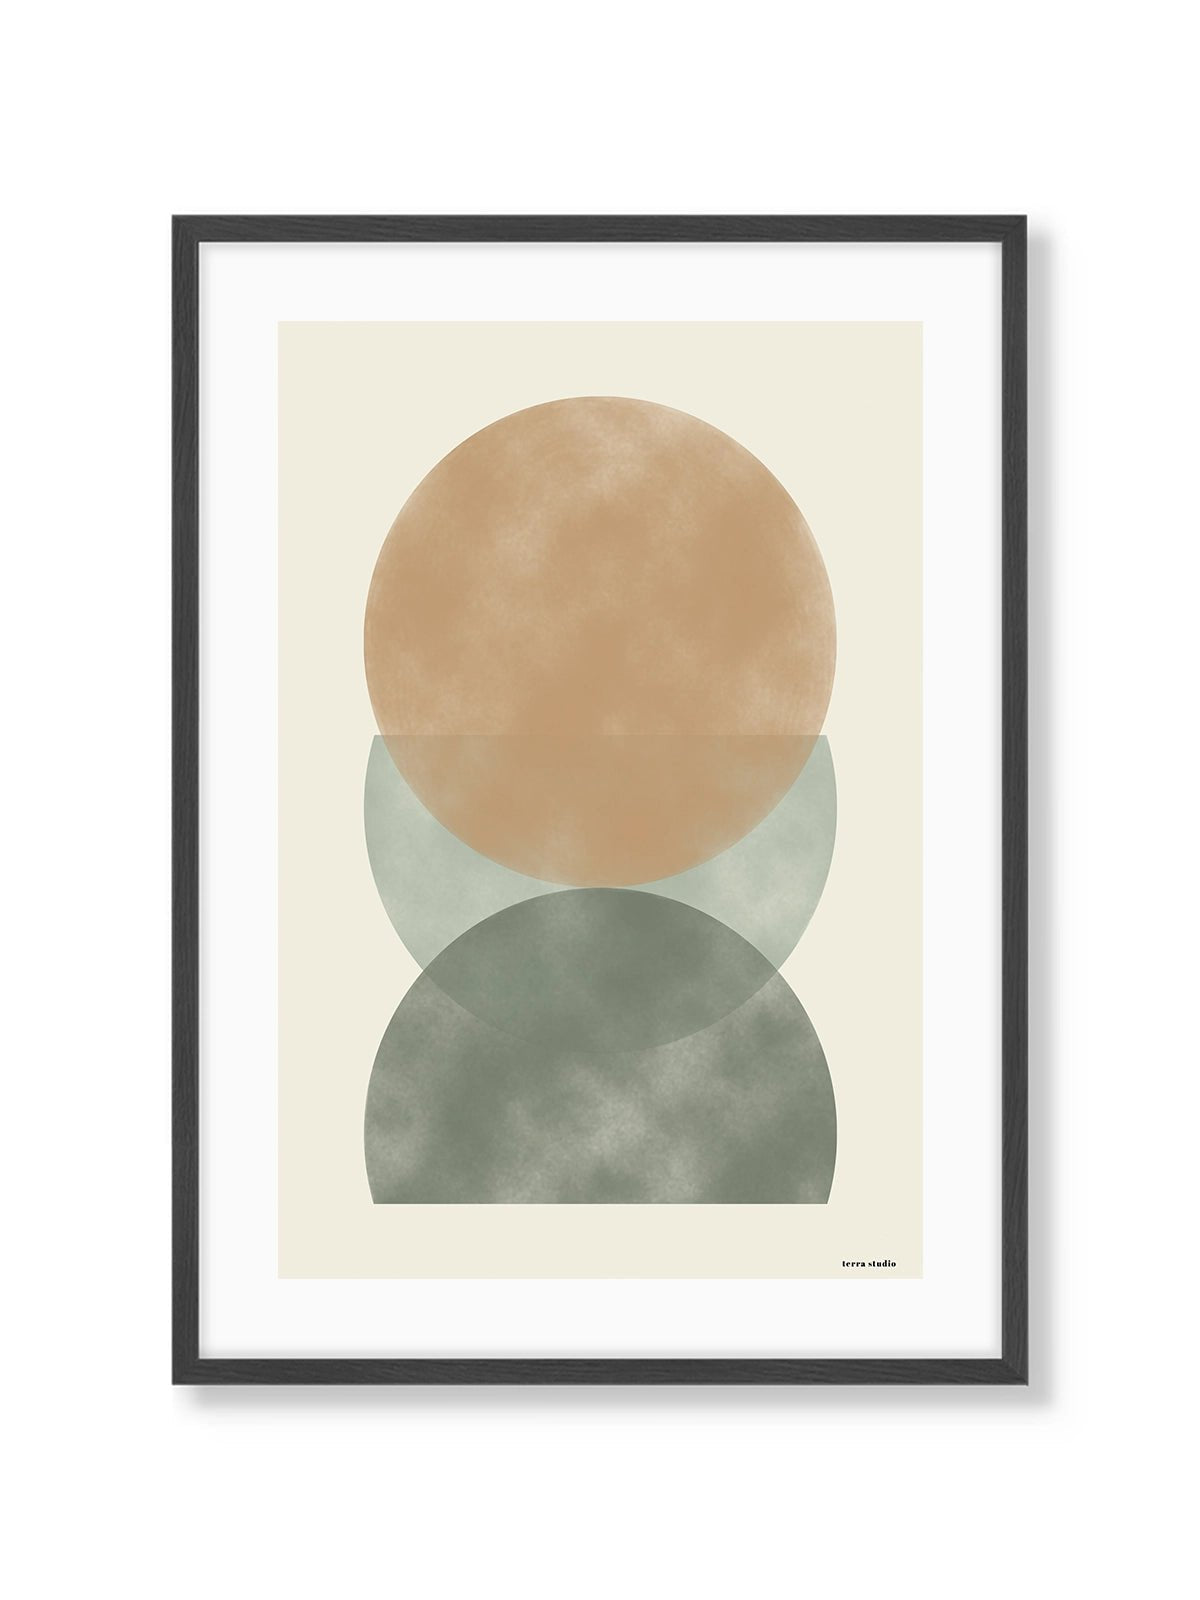 Abstract Circles - Una Lámina de Terra Studio - Decora tu casa en Nomadart